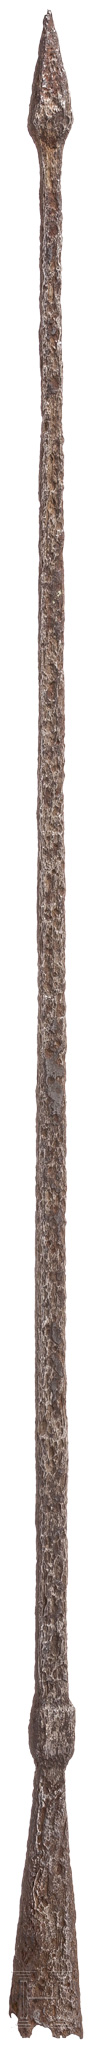 Pilum-Spitze, römisch, 2. - 3. Jhdt.Hervorragend erhaltene eiserne Pilumspitze. Die verdickte - Image 2 of 2